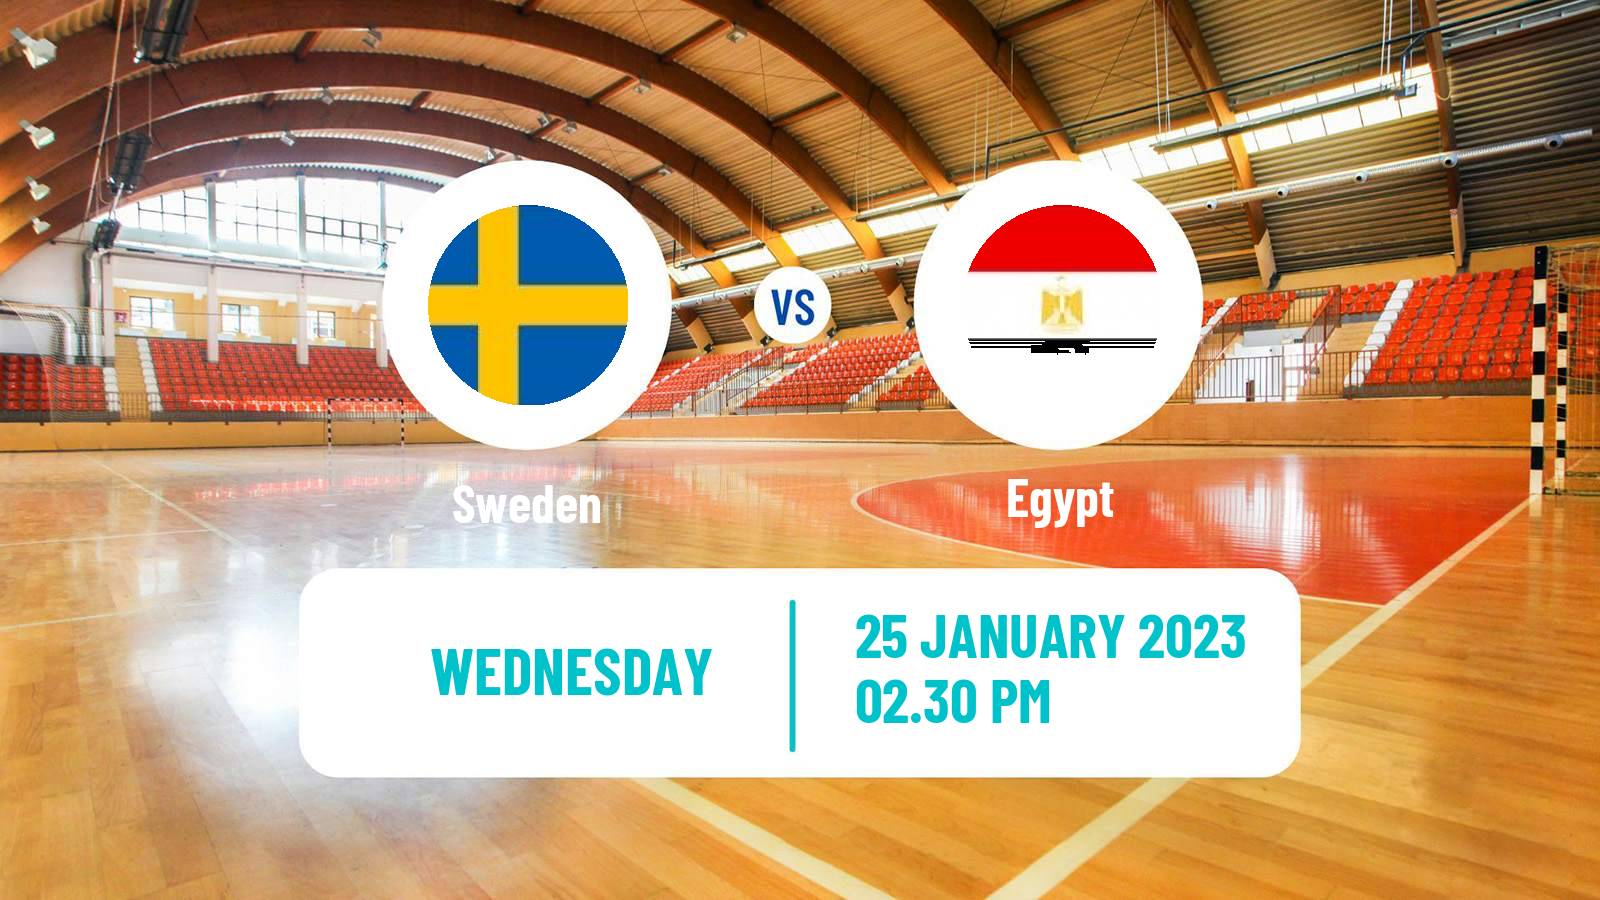 Handball Handball World Championship Sweden - Egypt